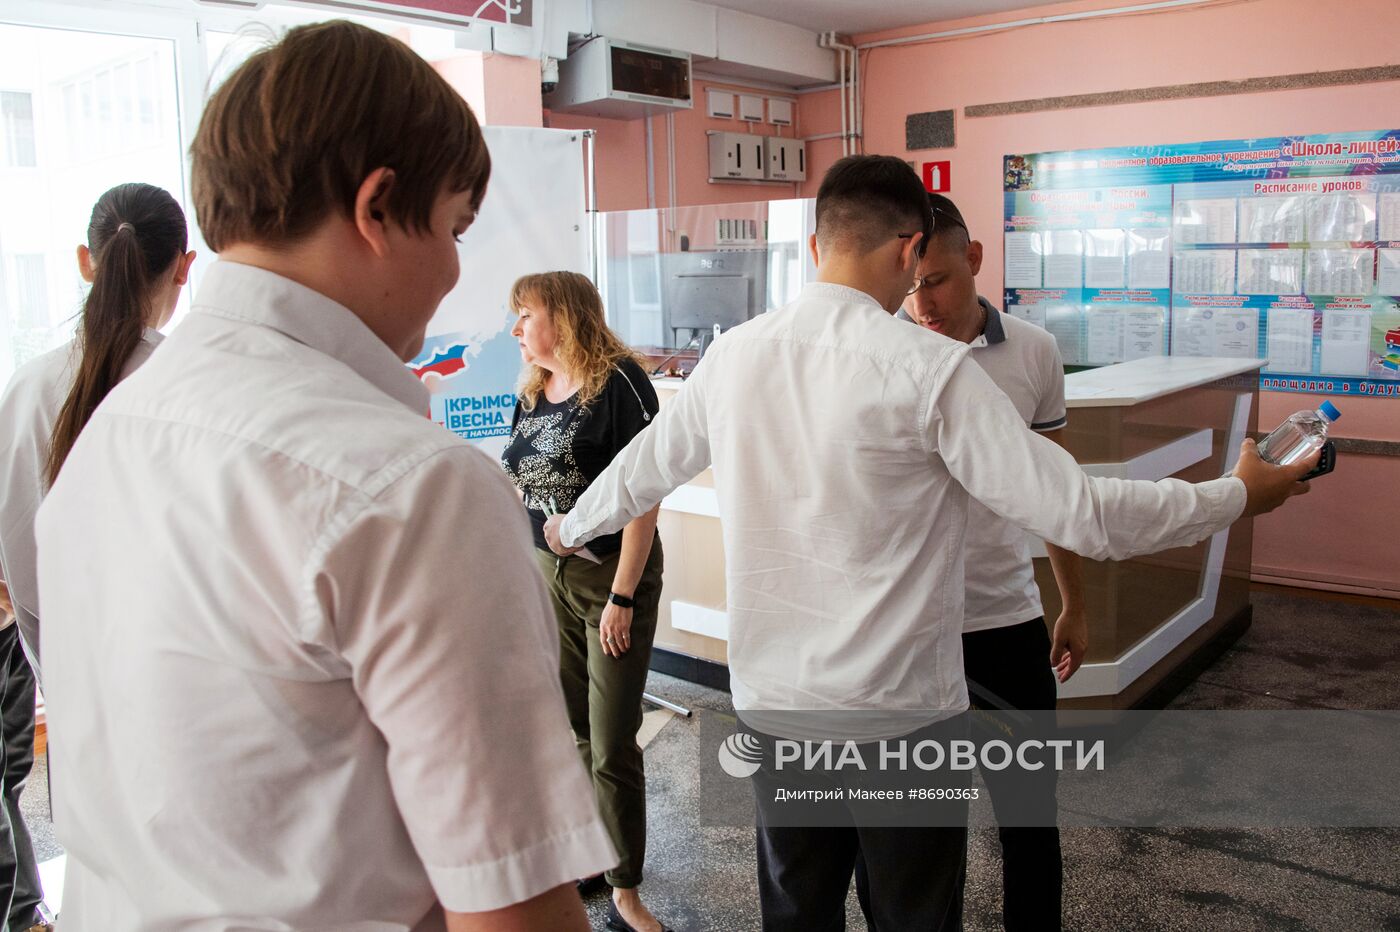 Сдача первого ЕГЭ в школах России